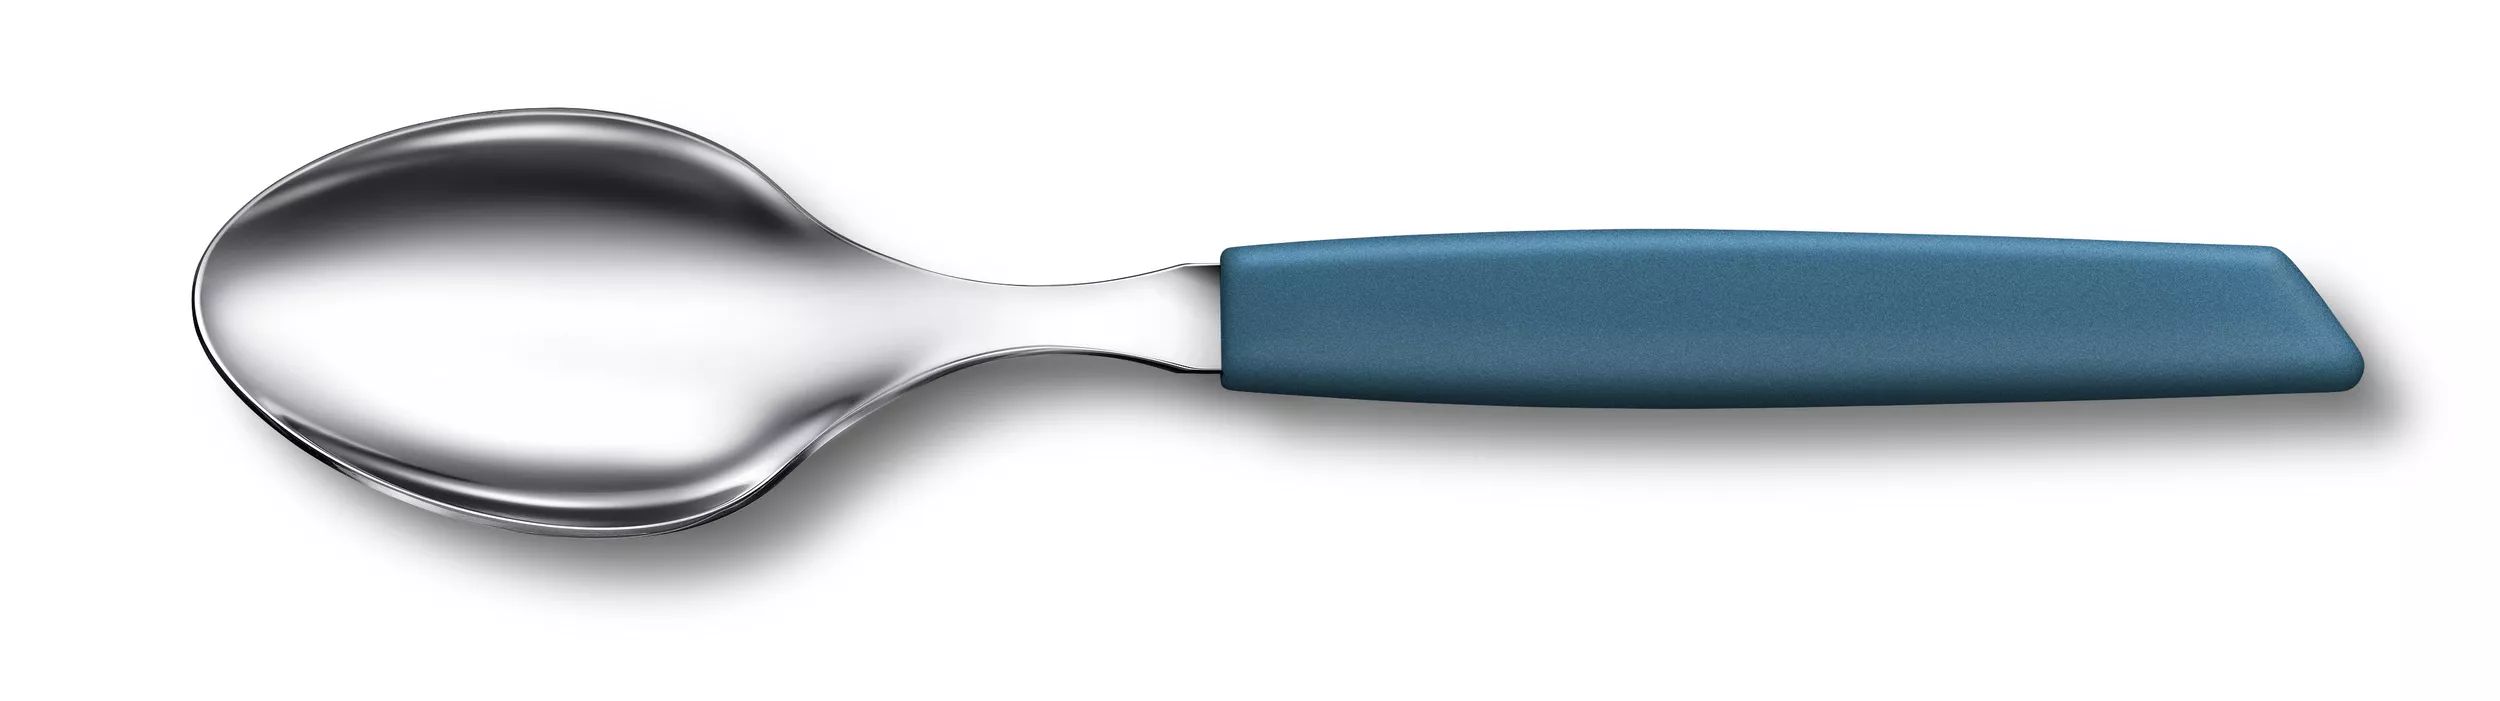 Swiss Modern Table Spoon-6.9036.082